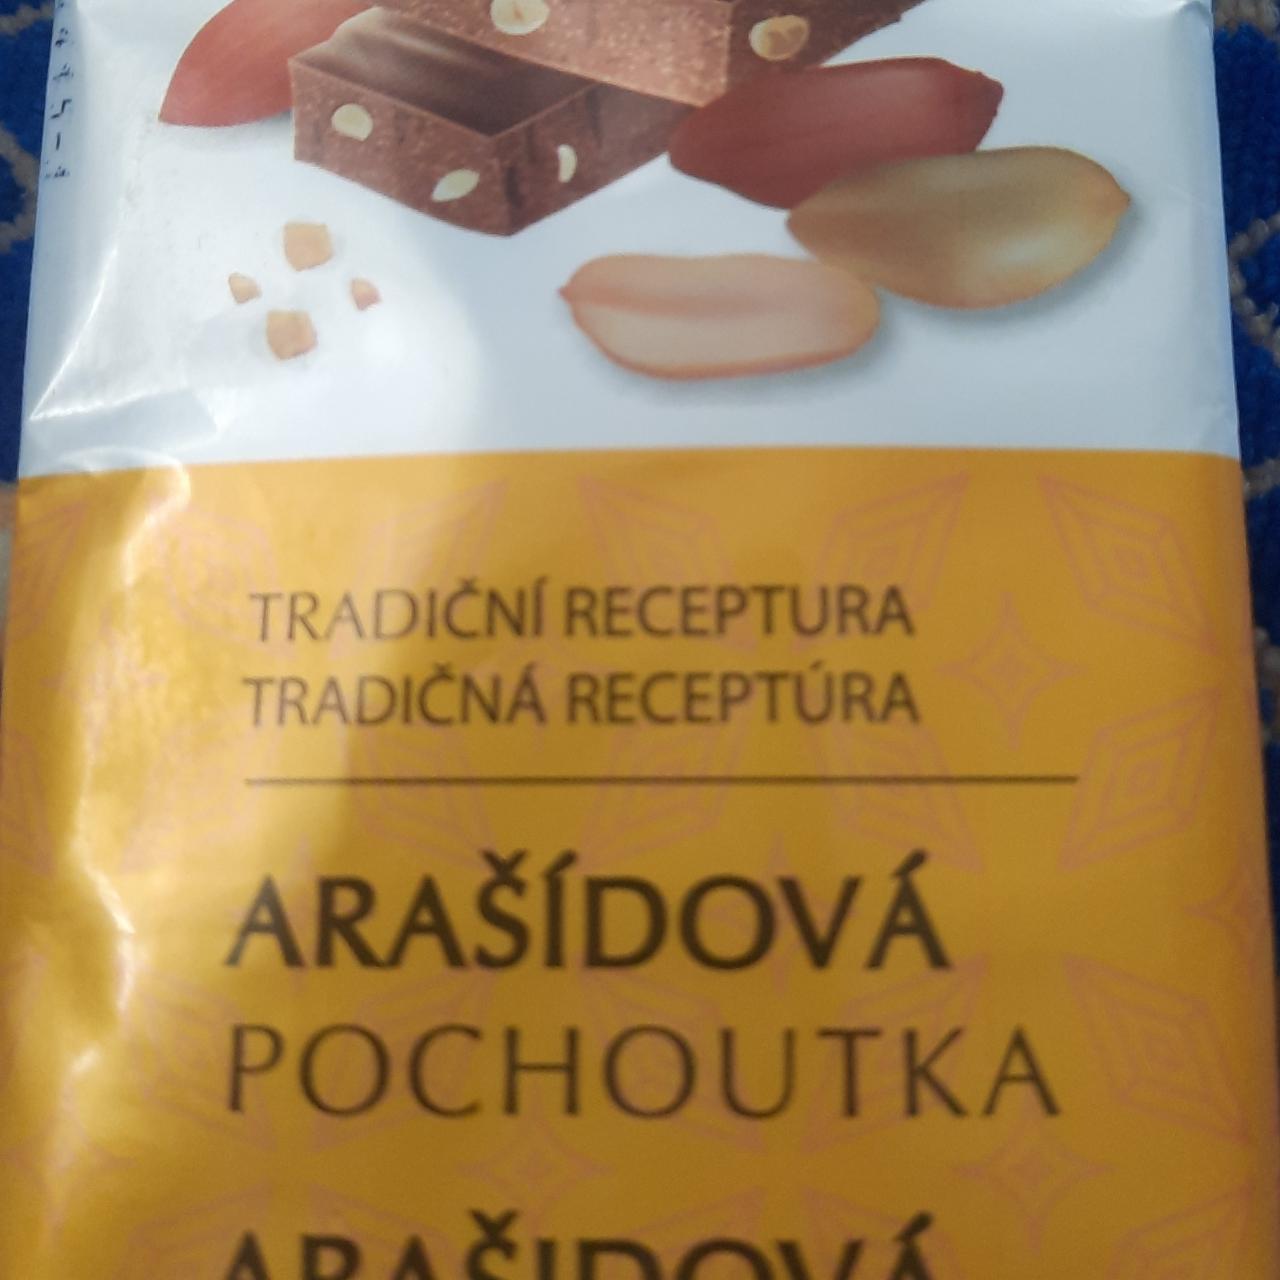 Fotografie - arašídová pochoutka Chocoland